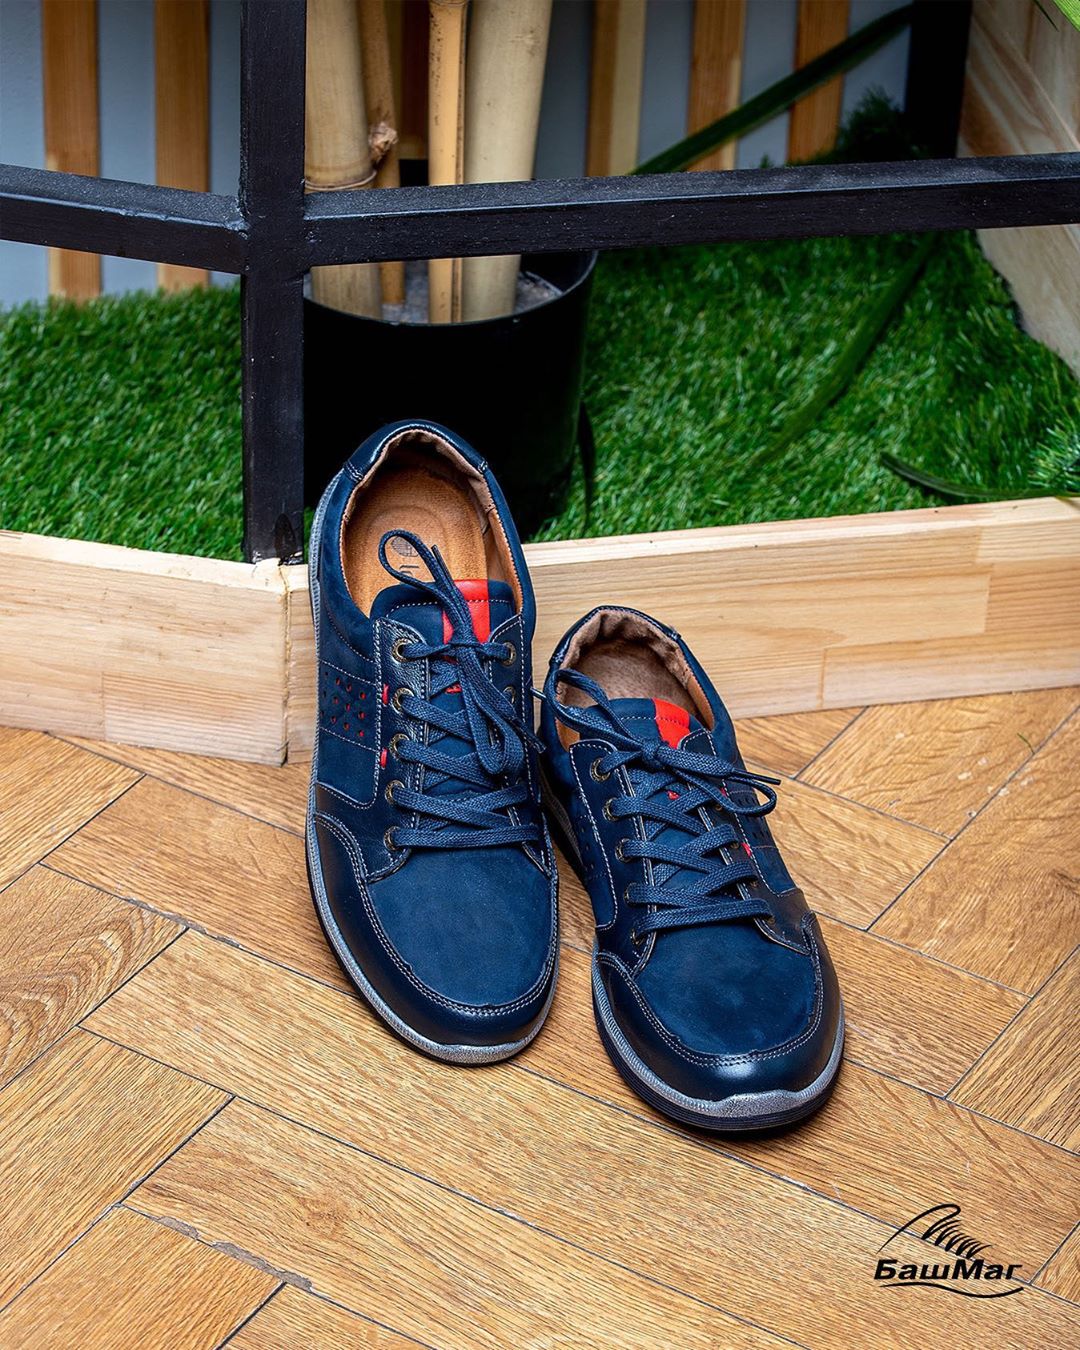 БашМаг - Longfield - это российский бренд женской и мужской обуви. Главное преимущество марки состоит в удобной колодке и использовании натуральных и высокотехнологичных материалов премиального к...